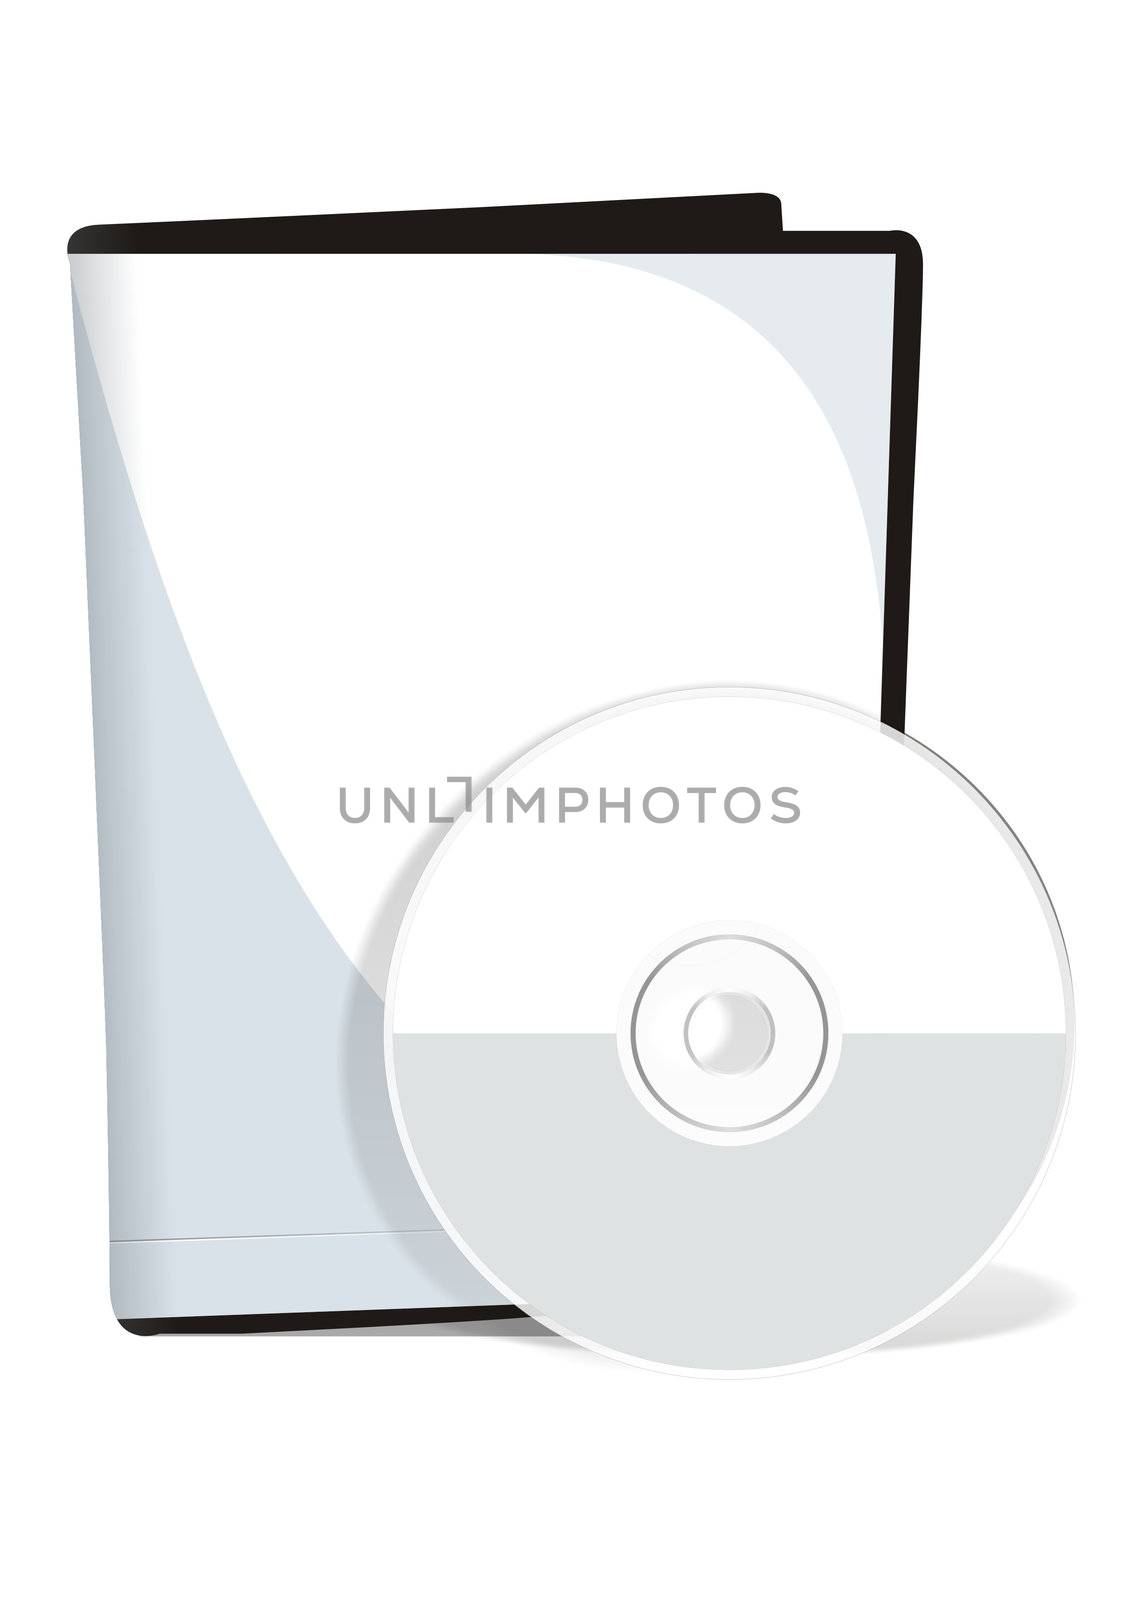 Cover and dvd disk by Kudryashka